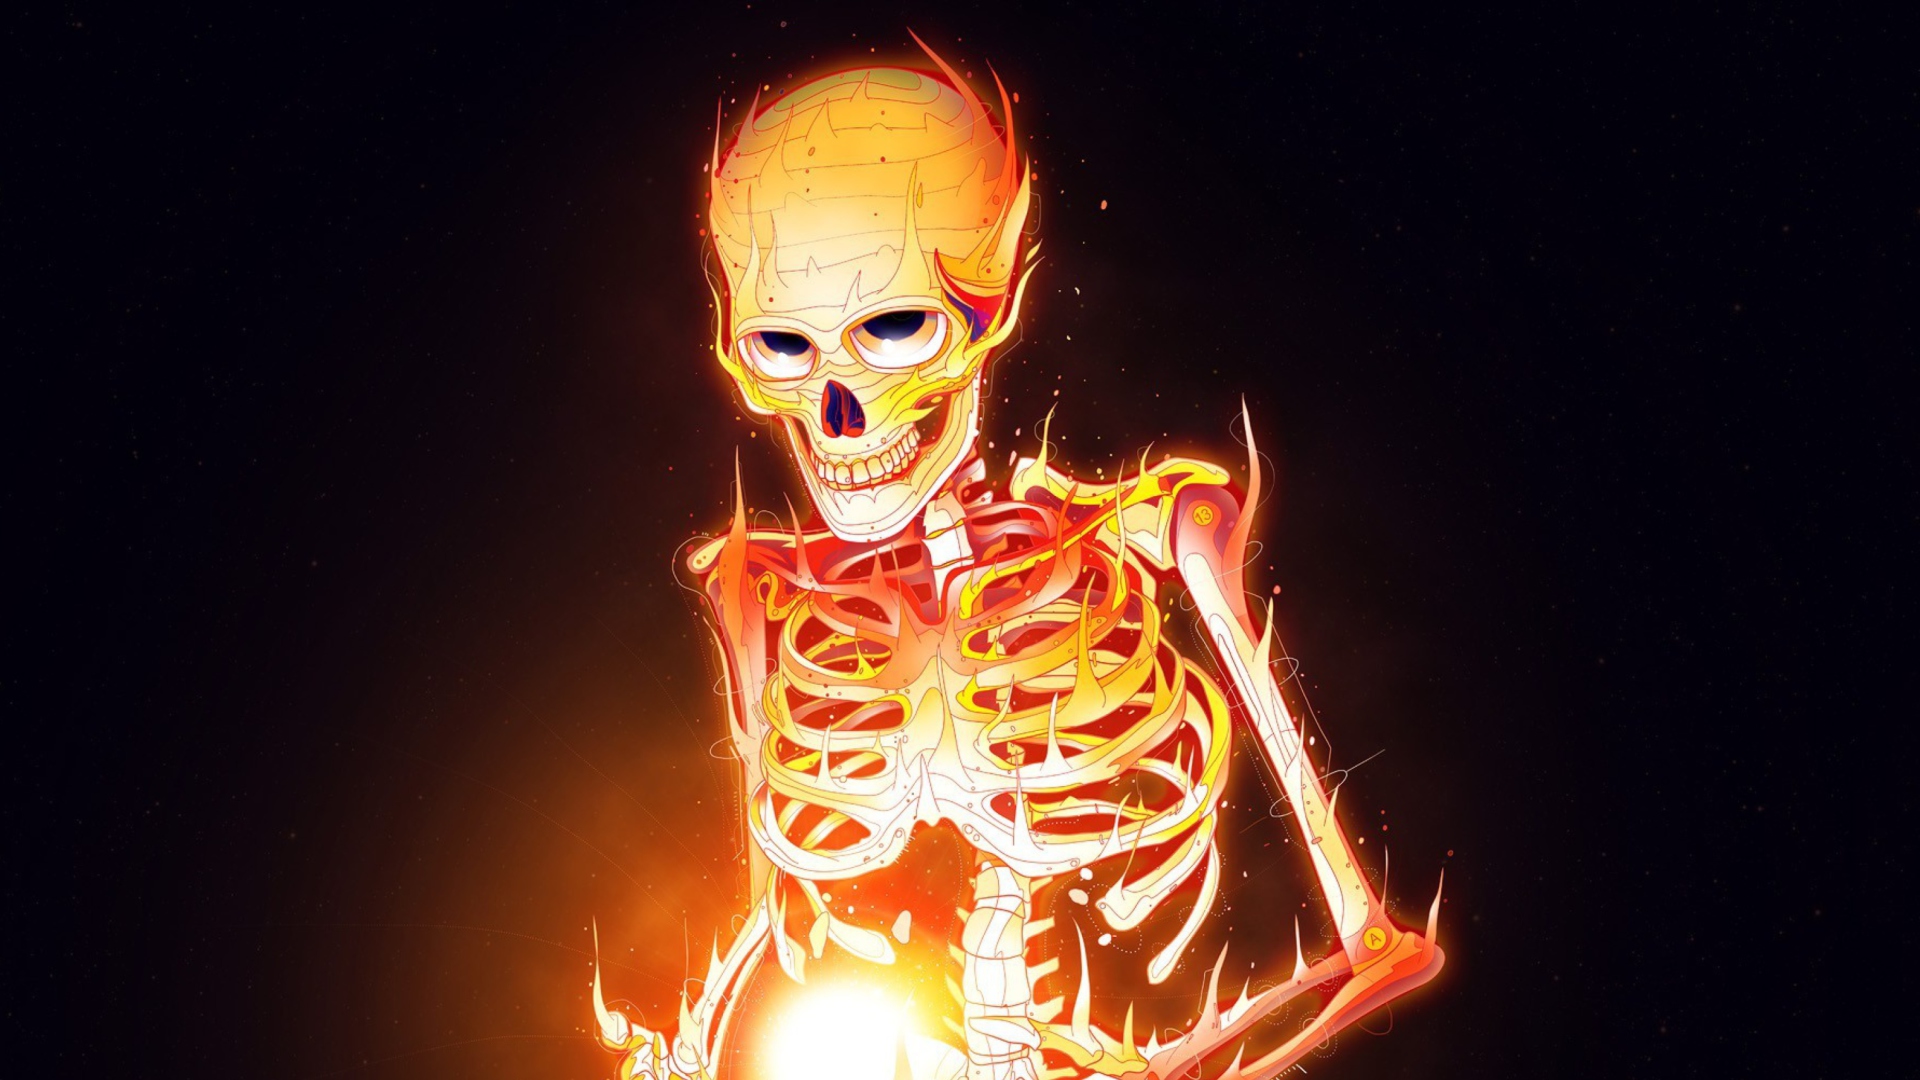 Обои Skeleton On Fire 1920x1080